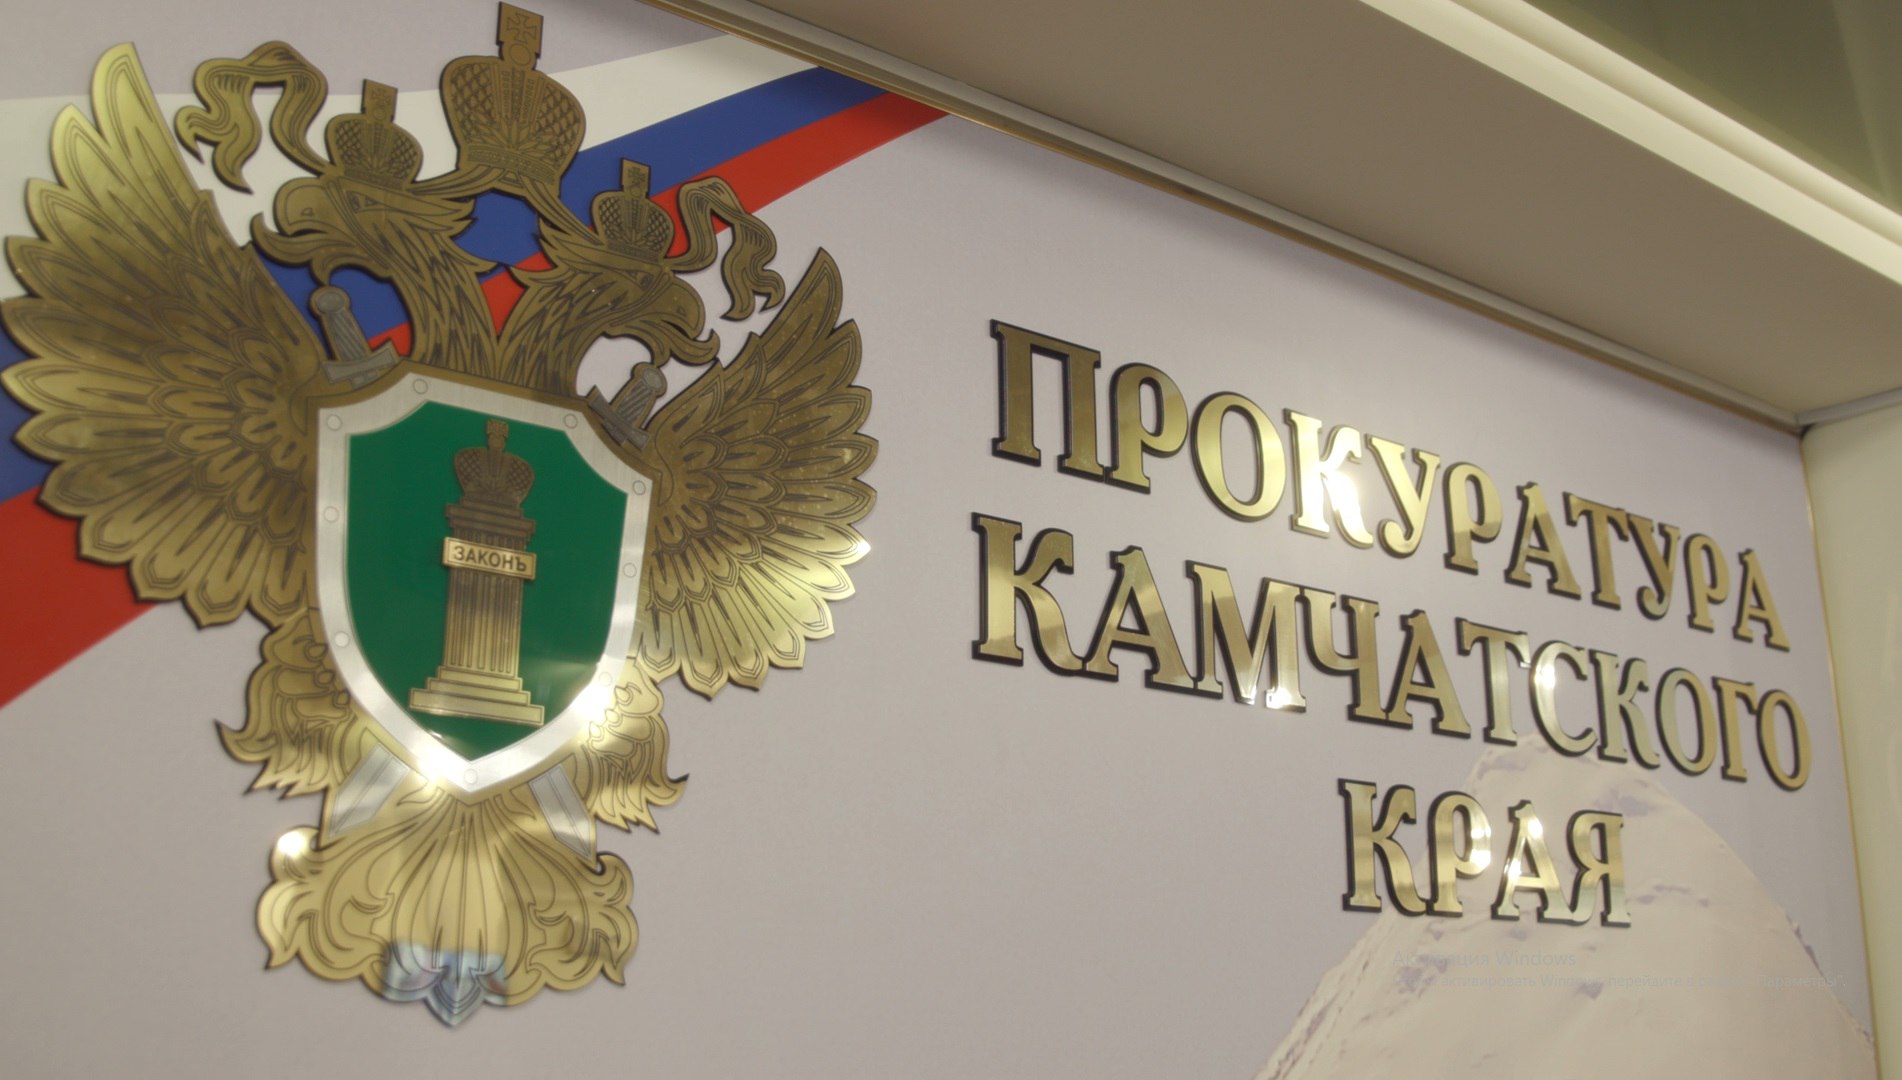 Прокуратура Камчатского края логотип